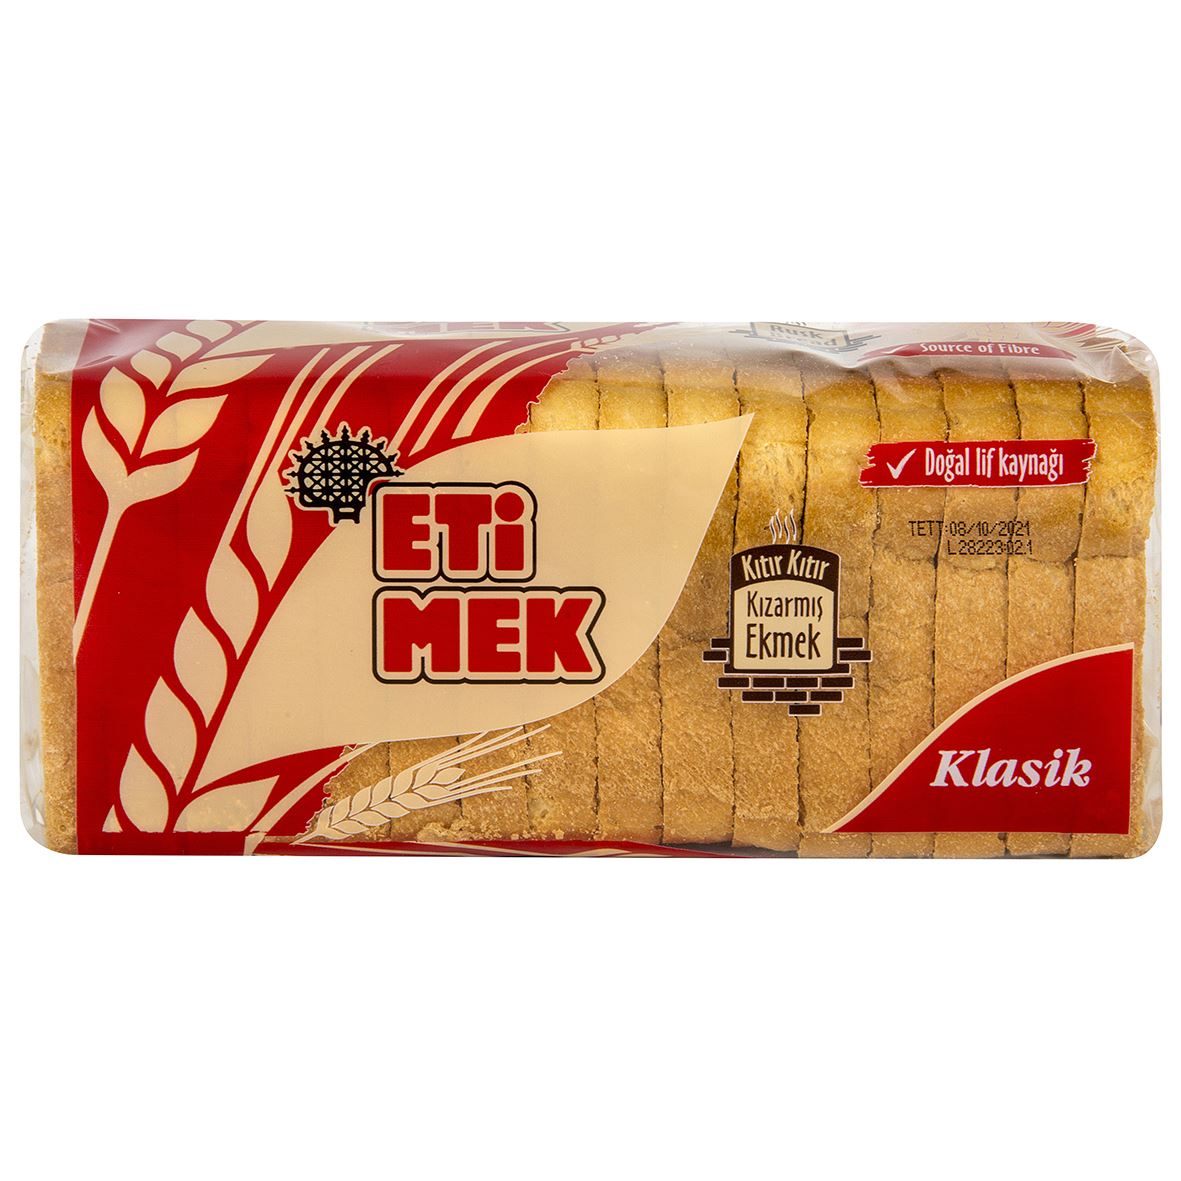 Etimek Klasik Kızarmış Ekmek 143 G